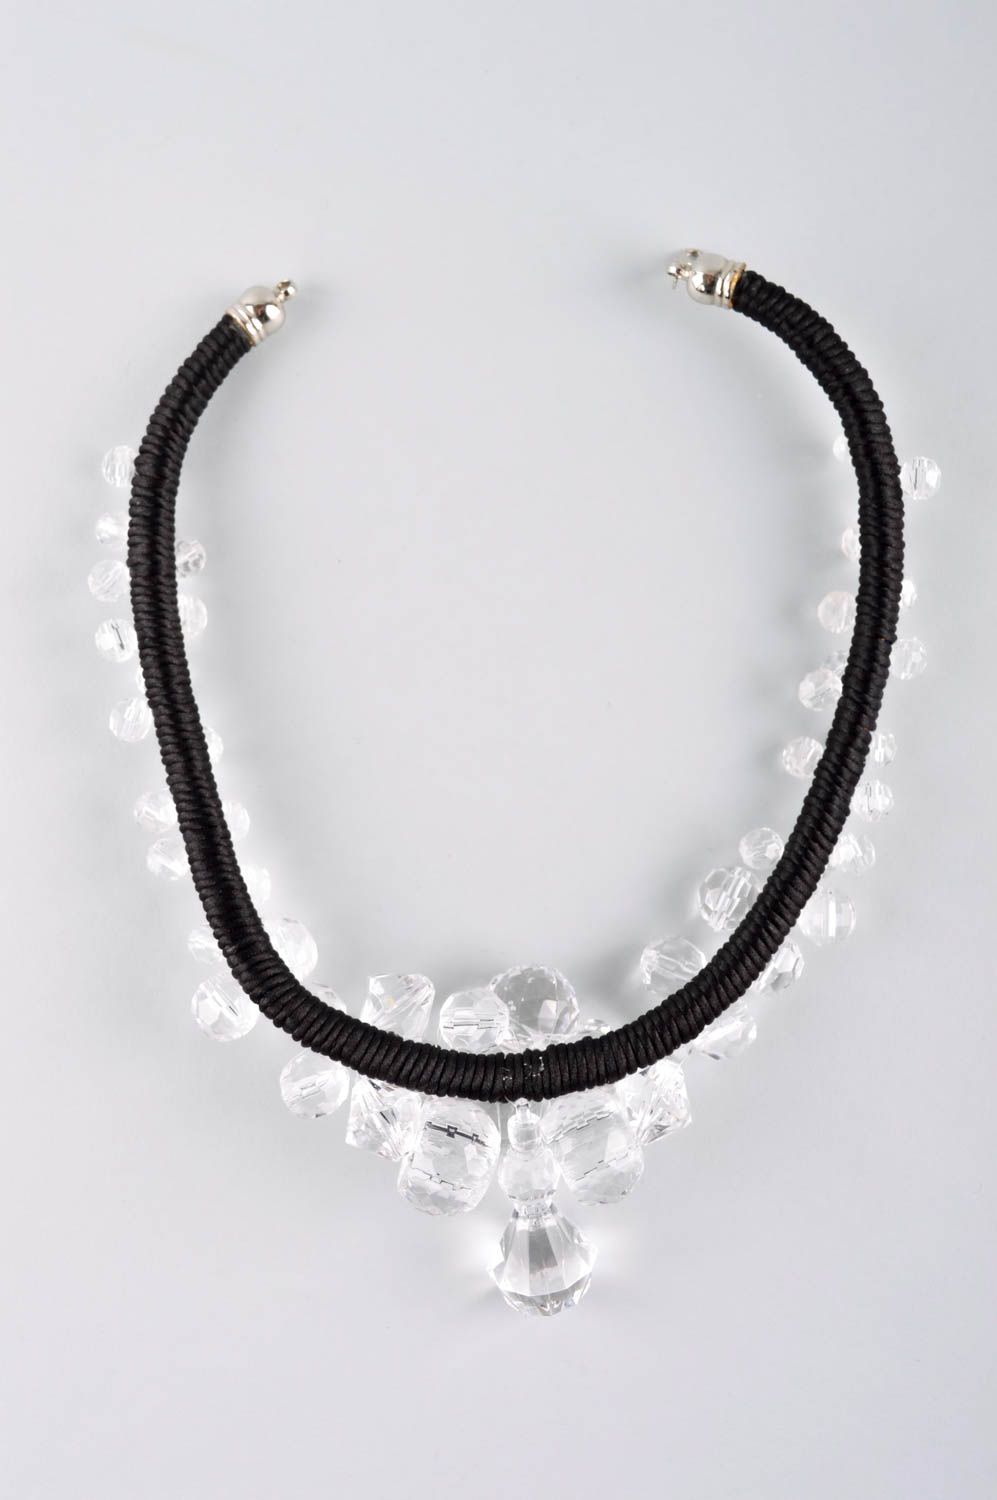 Handmade stylish cute necklace beaded textile necklace elegant jewelry photo 5